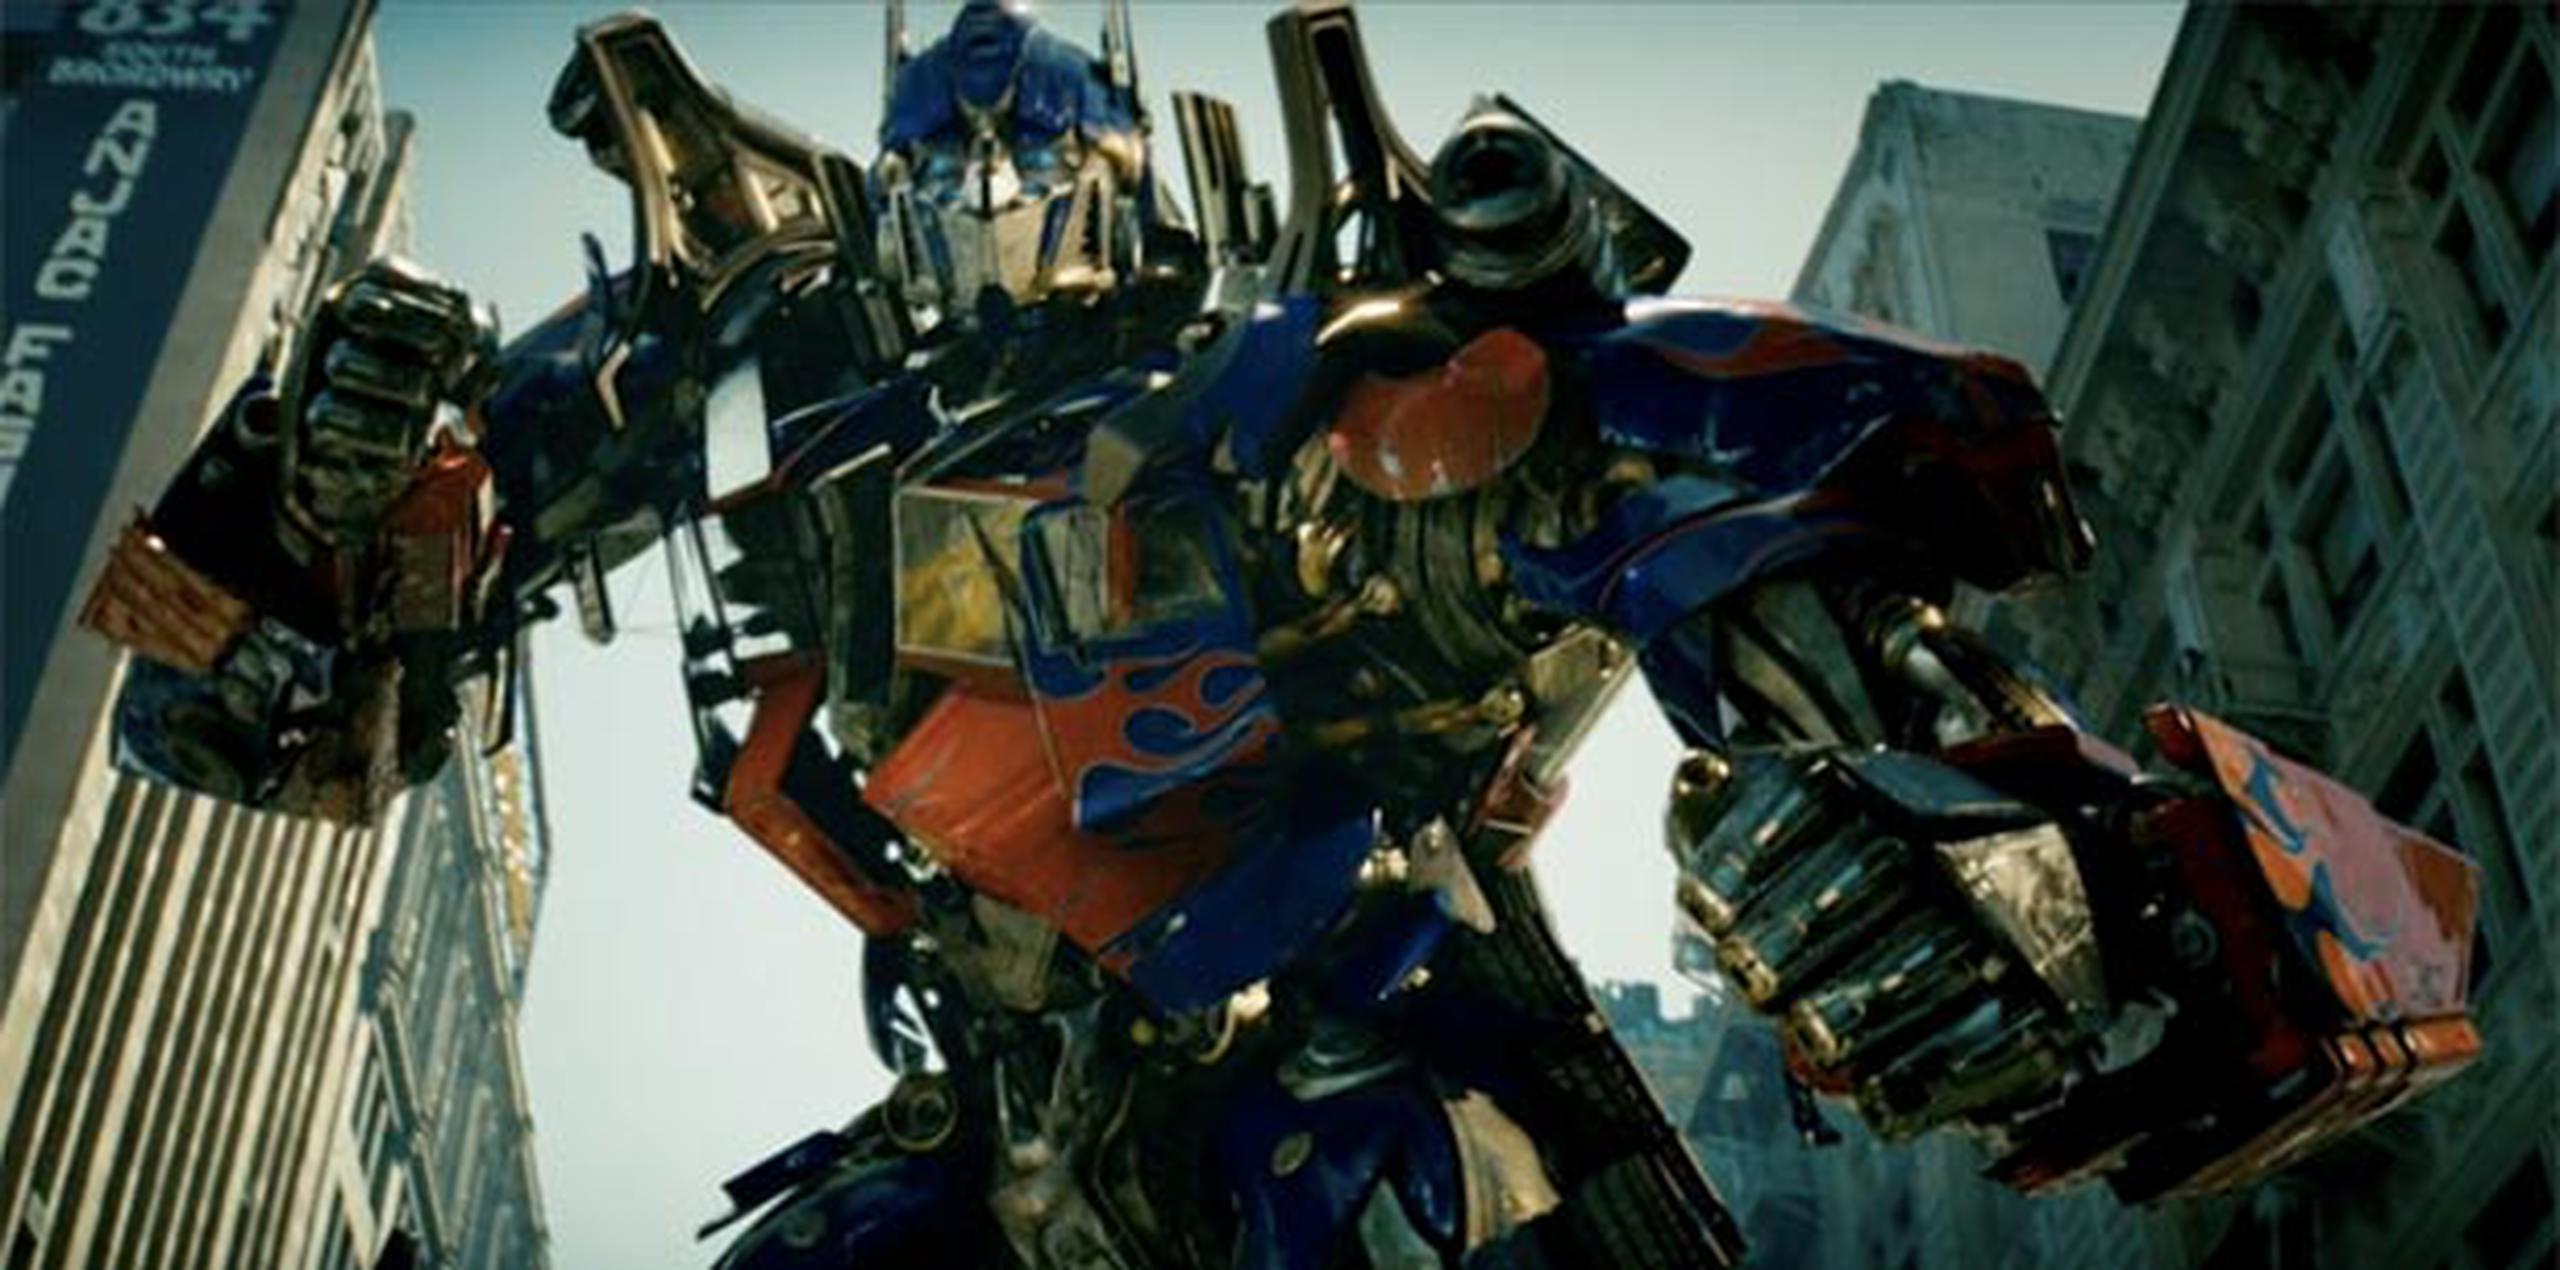 Después de Lo sé todo, la película Transformers fue el espacio más visto ayer en Wapa.